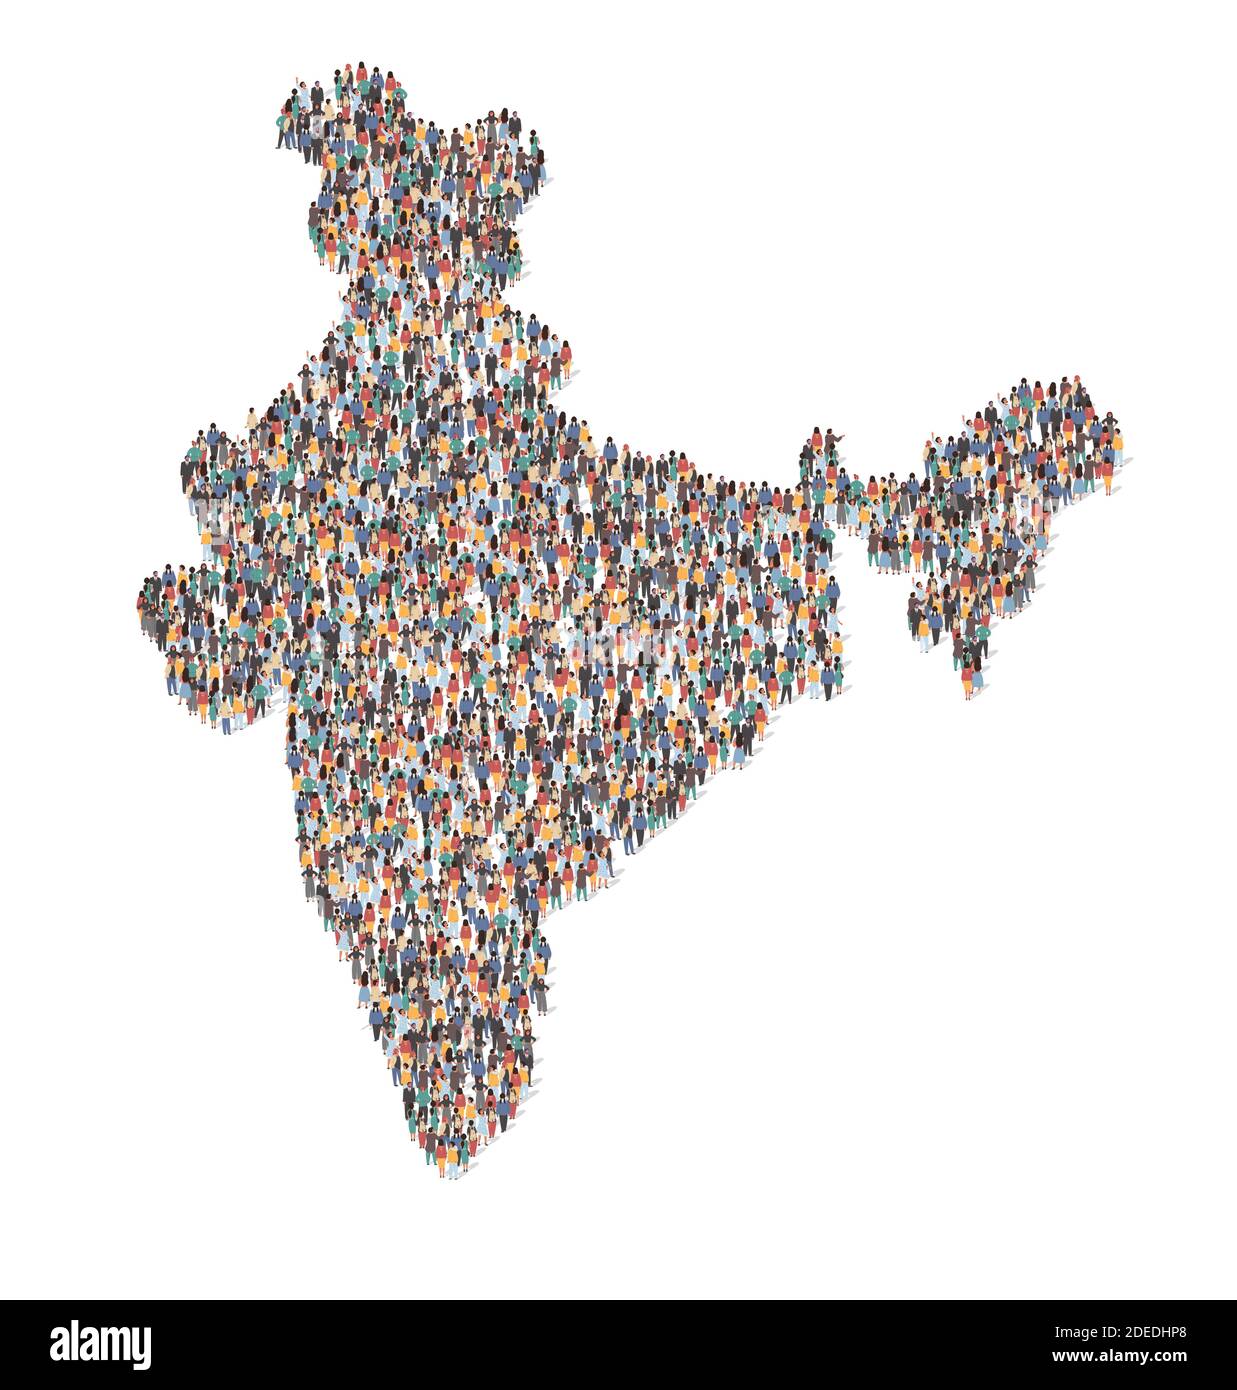 Grand groupe de personnes formant l'Inde carte debout ensemble, illustration vectorielle plate. Données démographiques de la population. Illustration de Vecteur